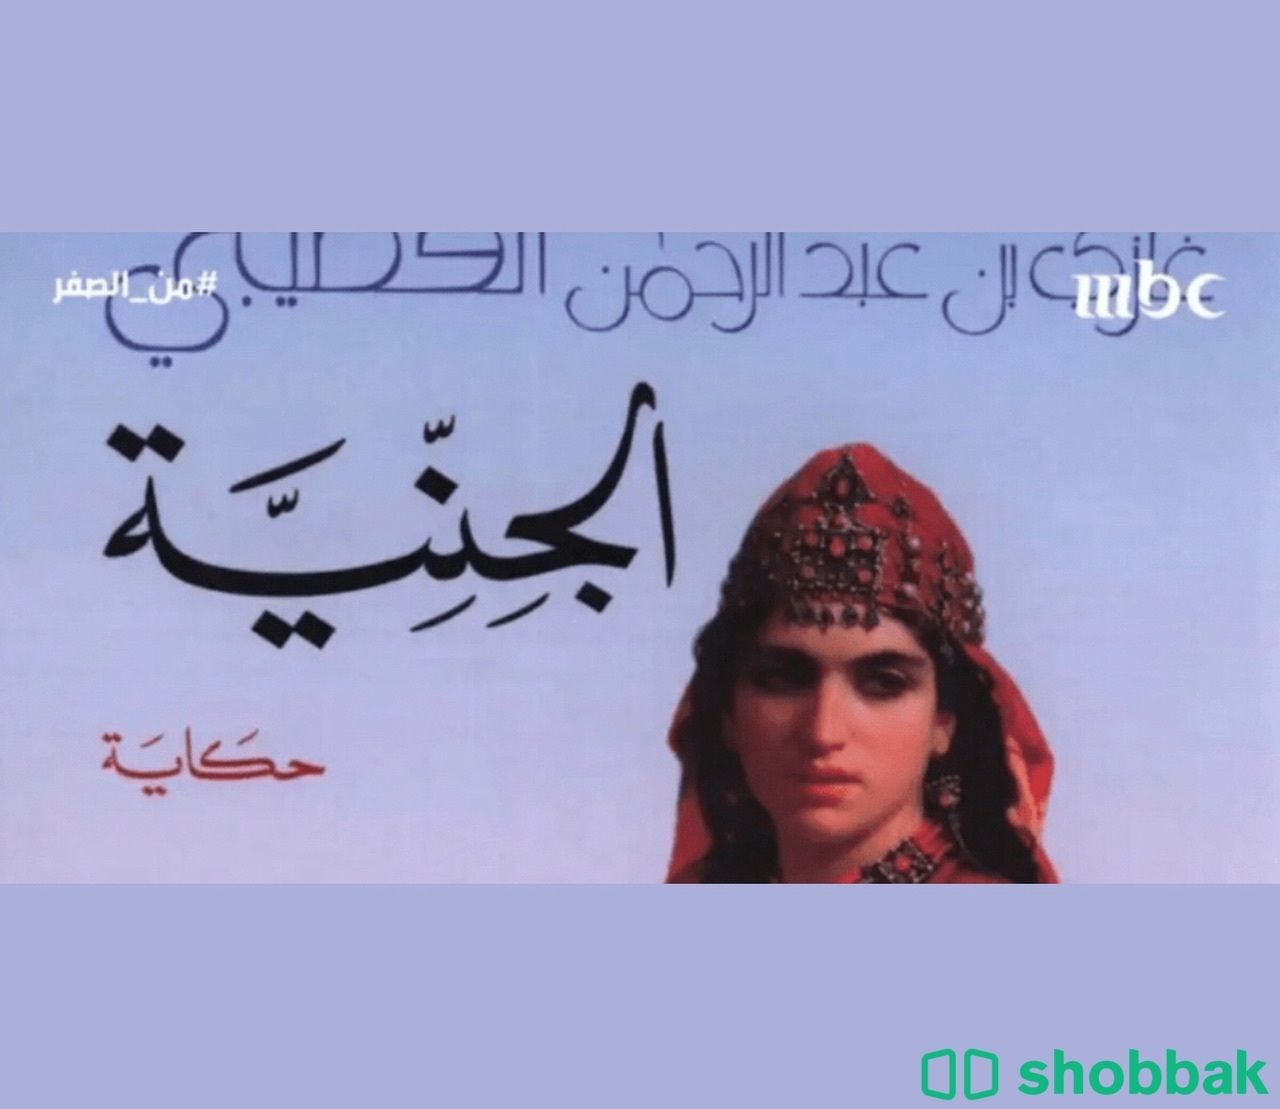 كتاب الجنية Shobbak Saudi Arabia